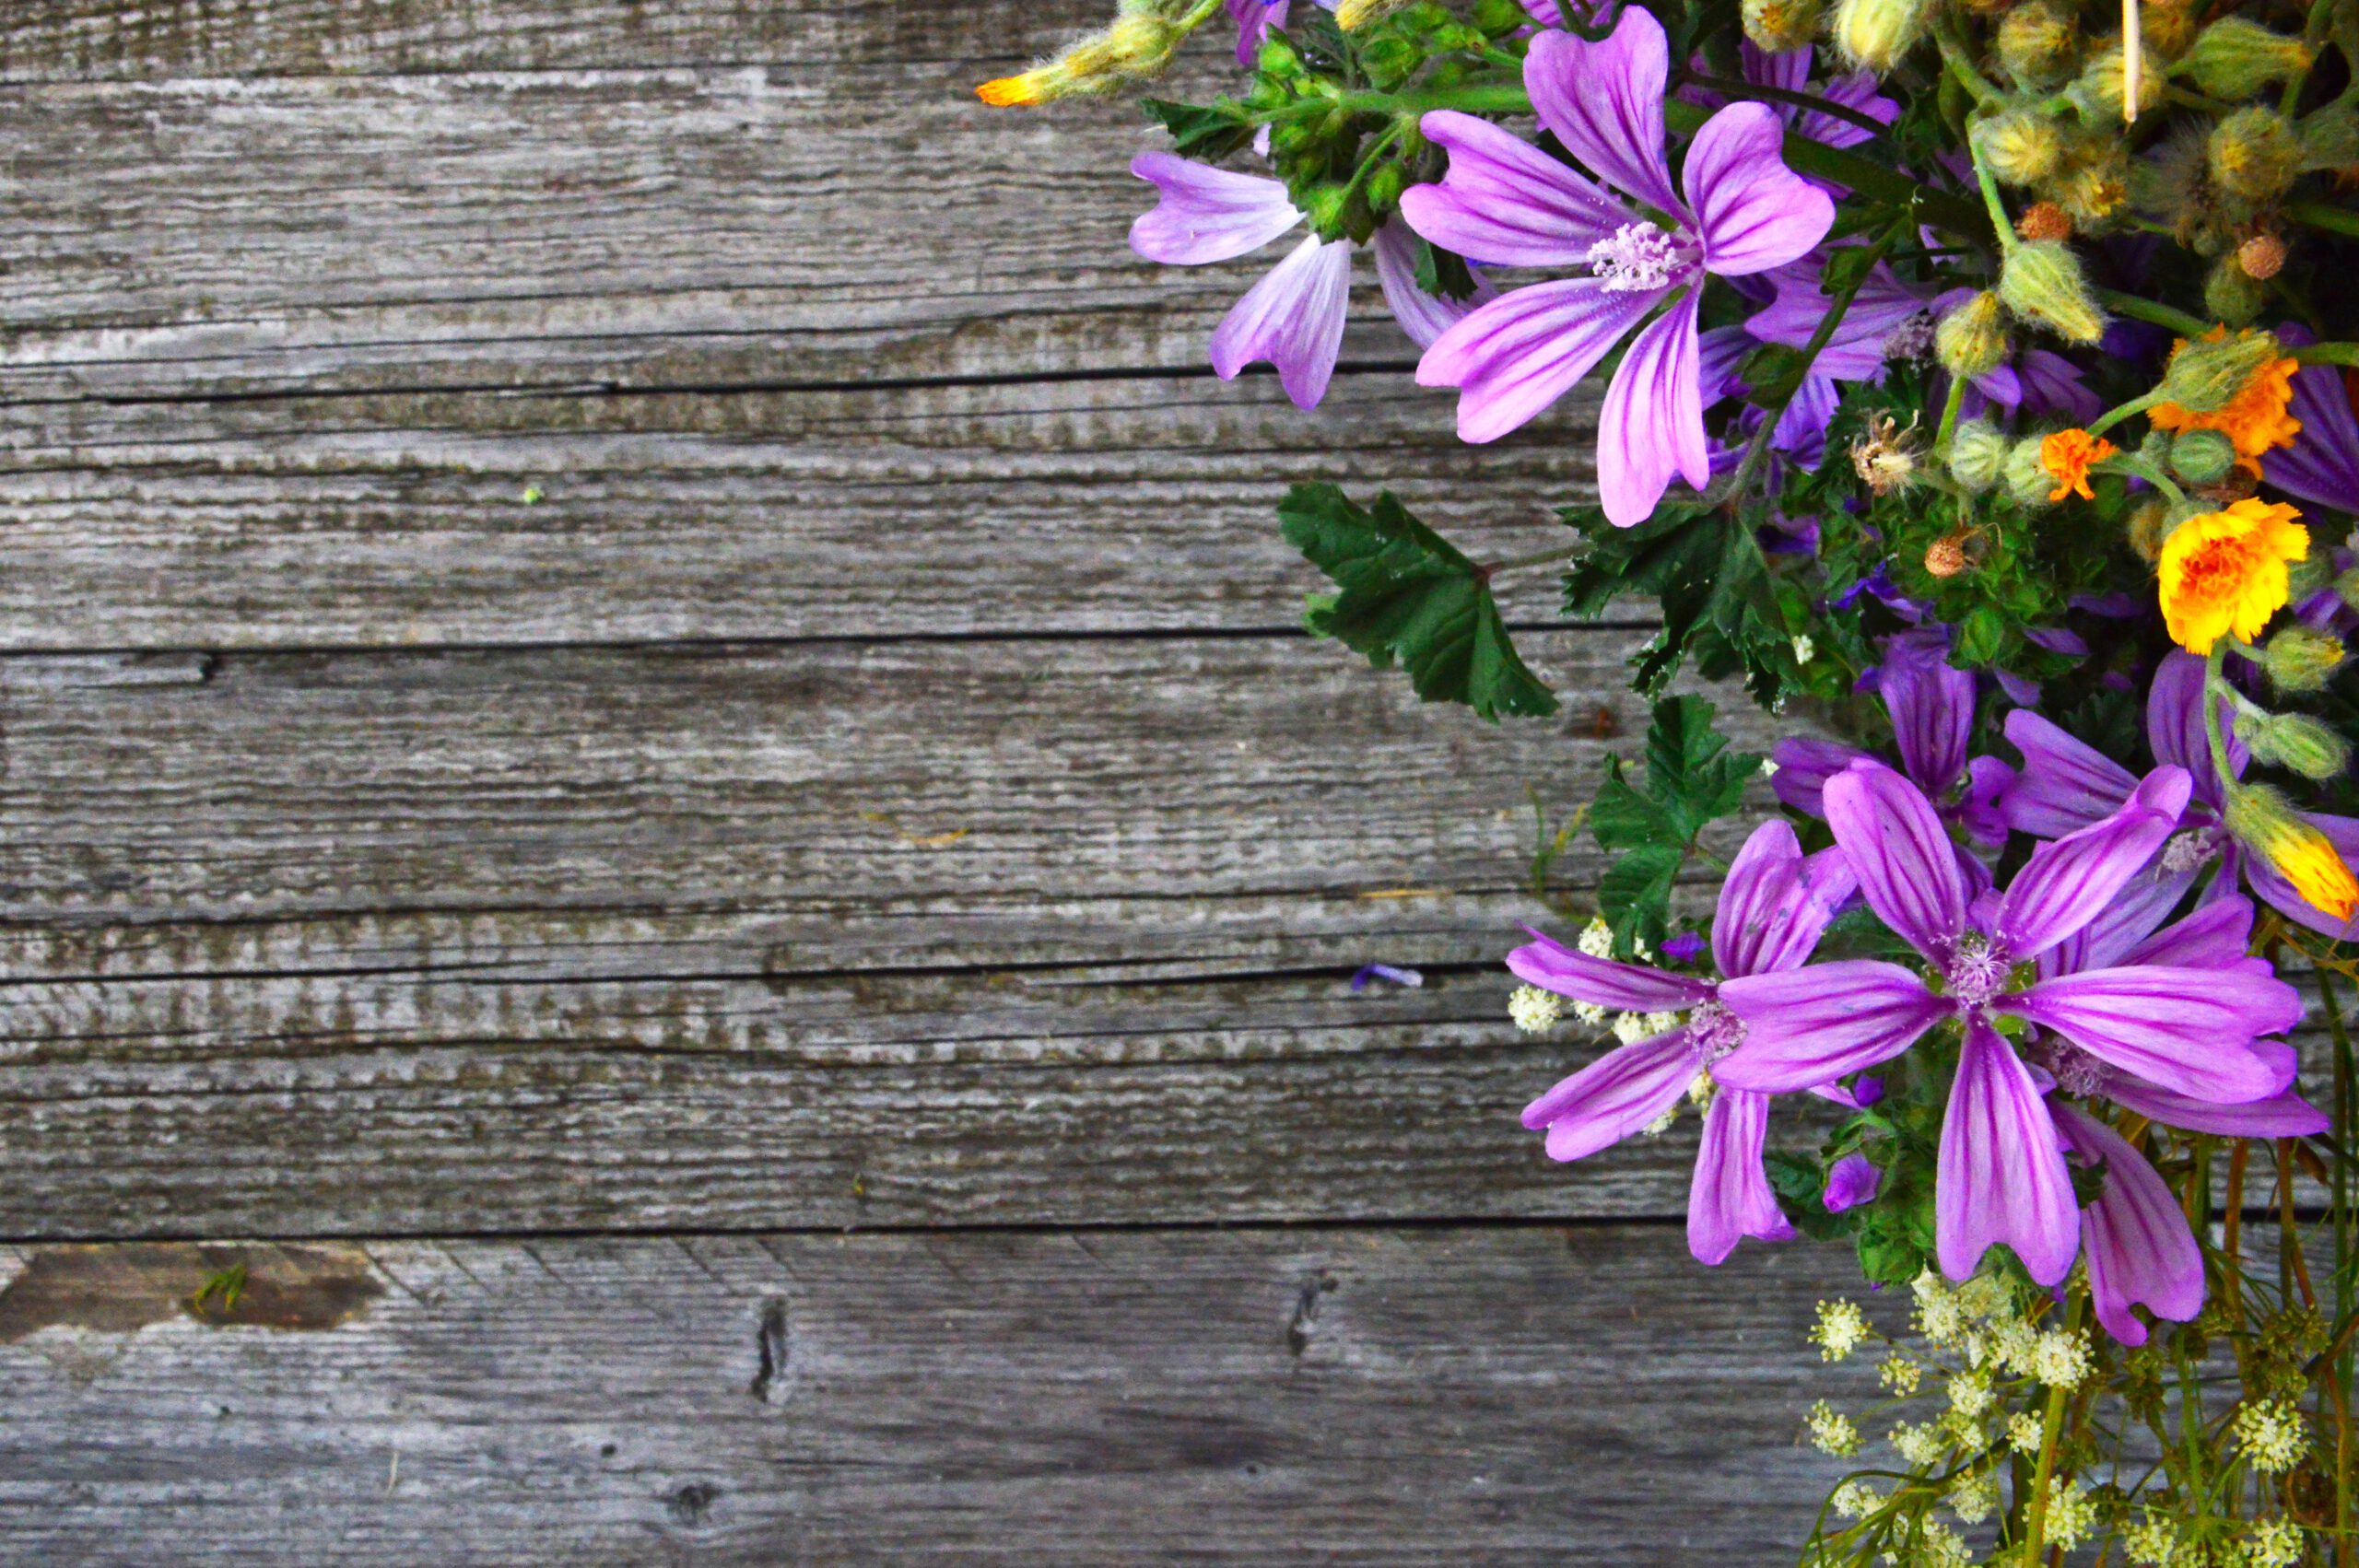 Fioletowe kwiaty na tle drewnianej ściany